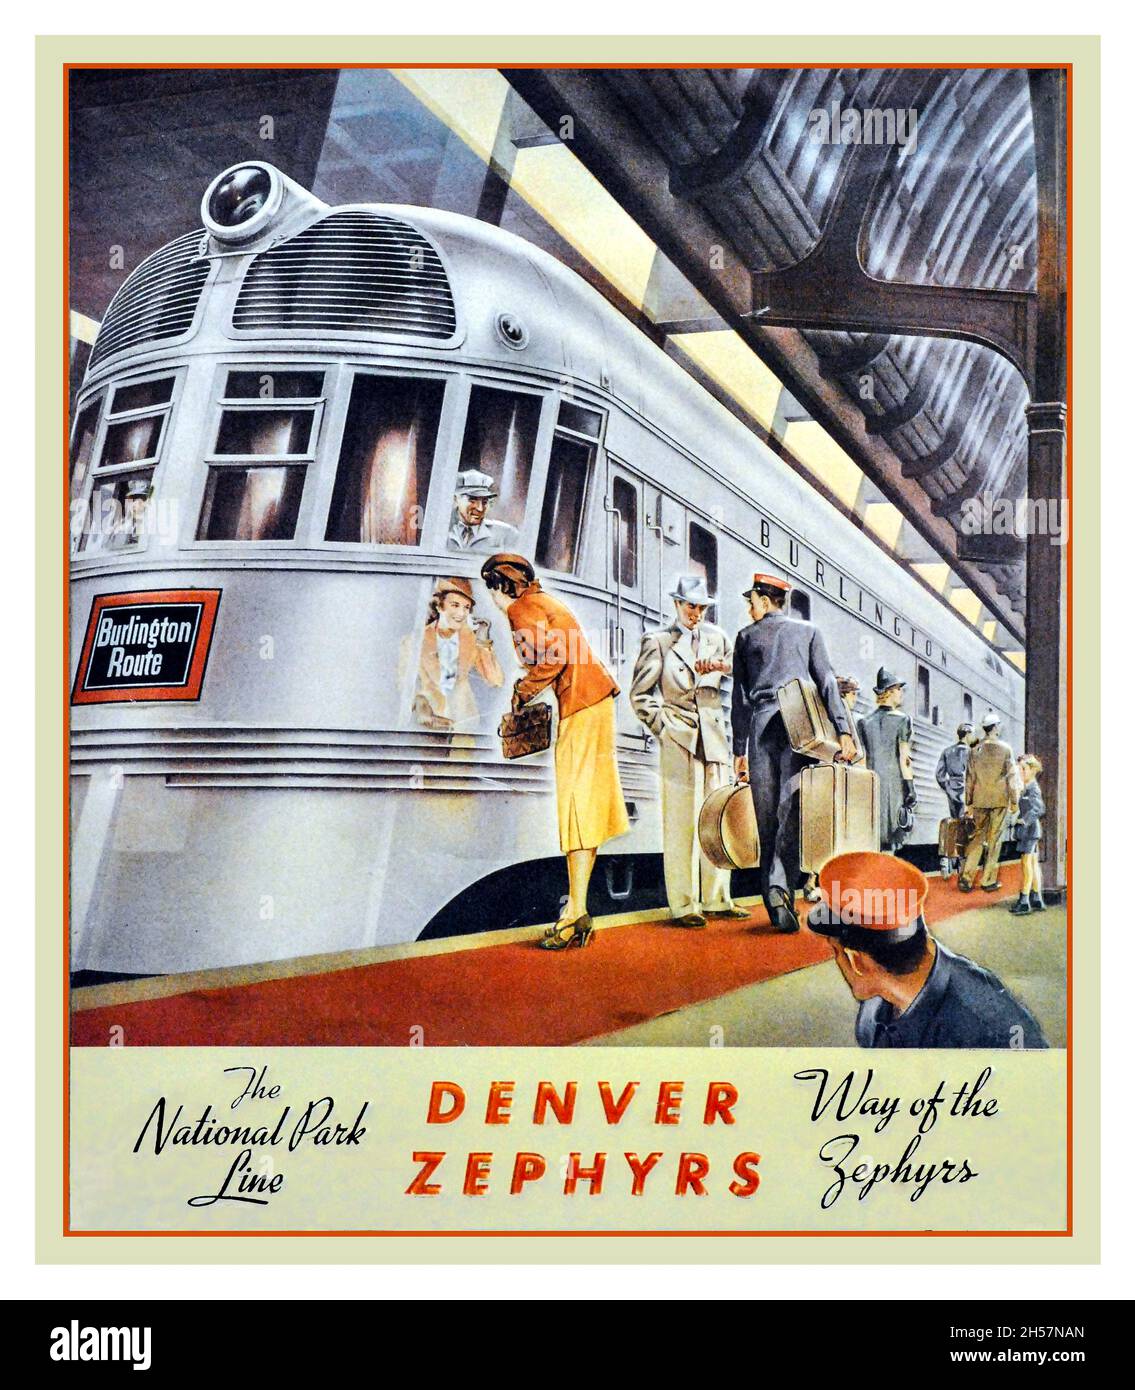 Affiche de chemin de fer américain vintage 1936 annonçant le Zephyr de Denver sur la route de Burlington soulignant la finition miroir de la locomotive en acier inoxydable. Banque D'Images